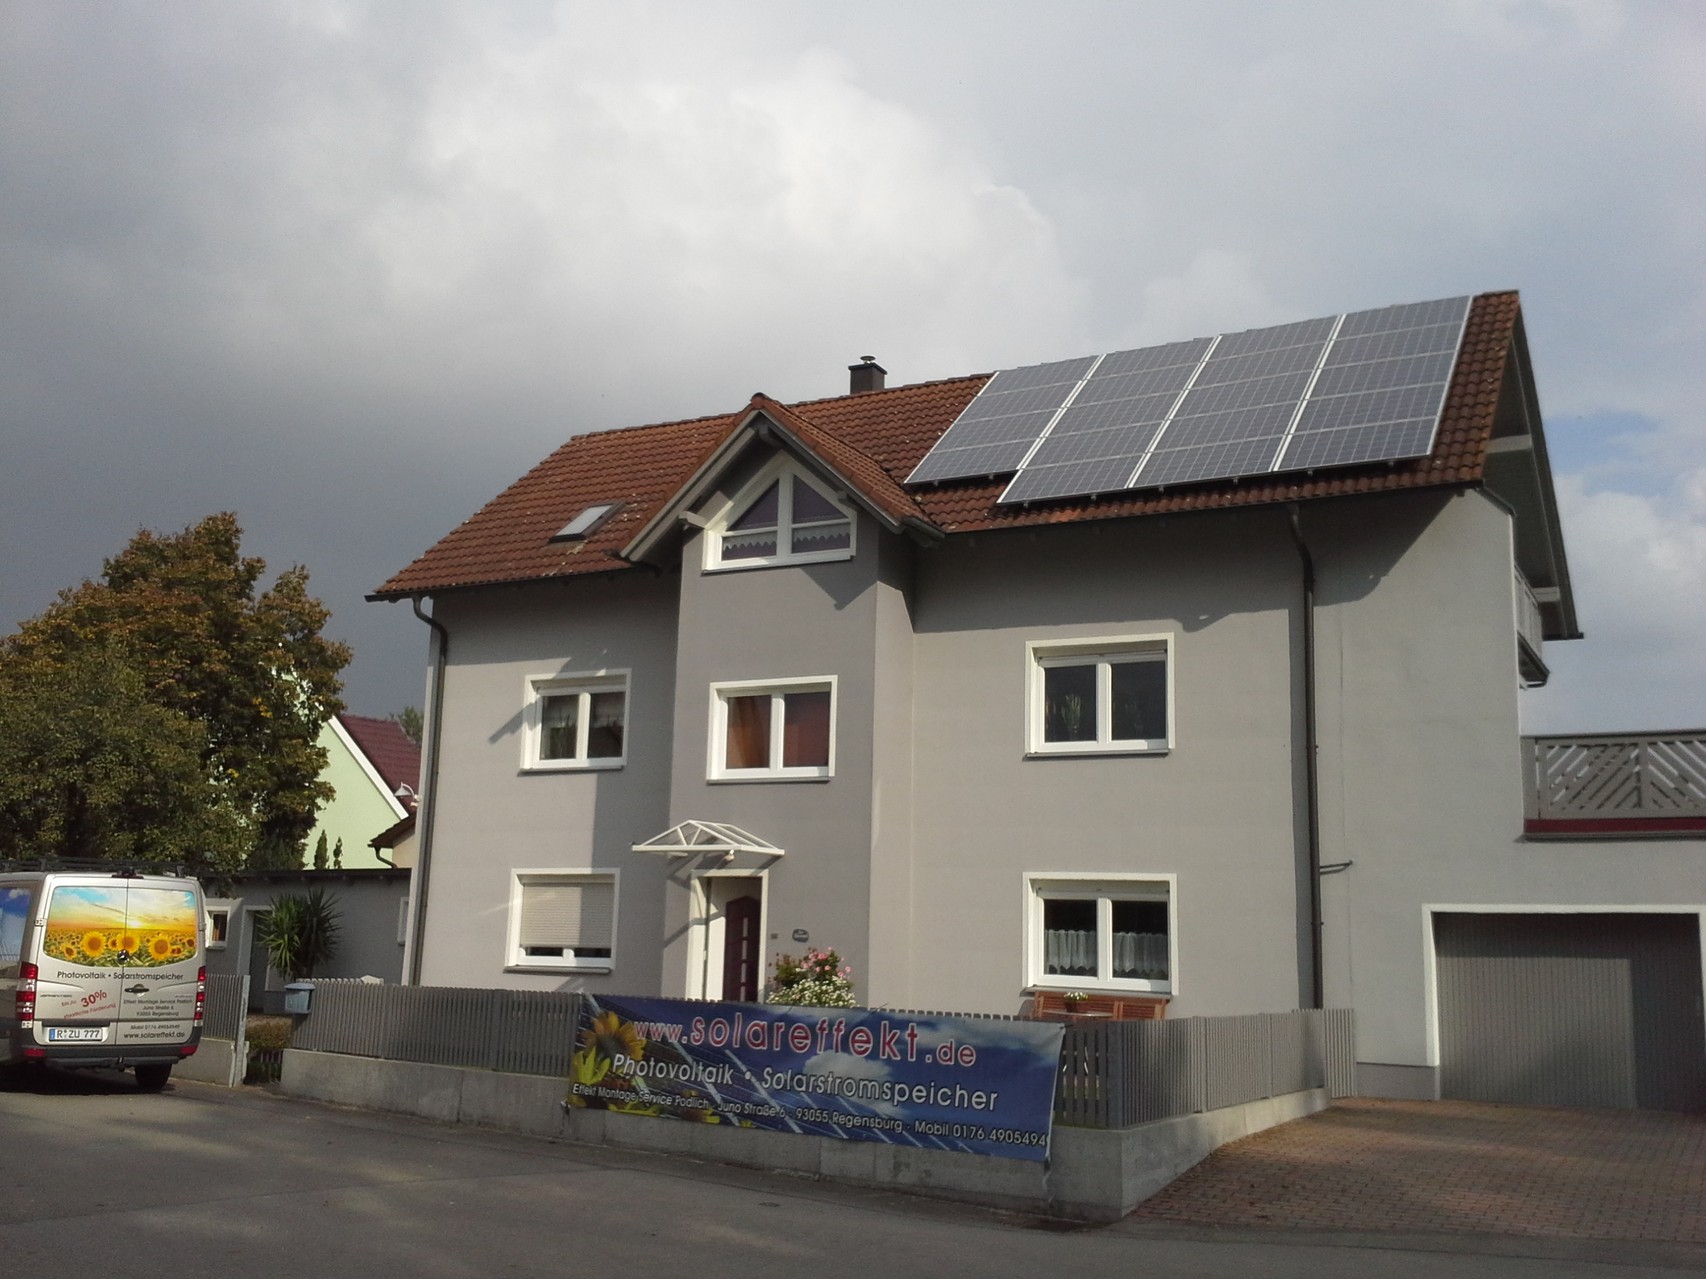 Phototovoltaikanlage 9,945 kWp in 94421 Schwandorf mit Solarwatt Glas/Glas Module 30 Jahre Garantie